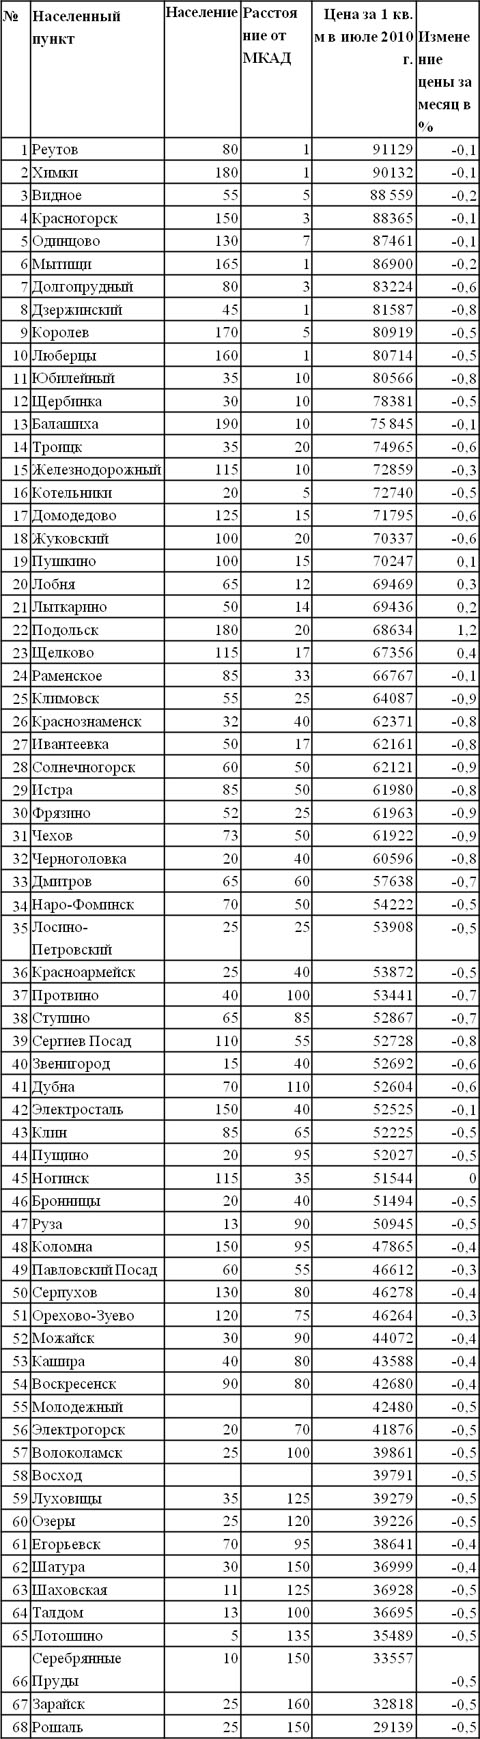 Цены за 1 кв. м жилья в городах Подмосковья по состоянию на июль 2010 года